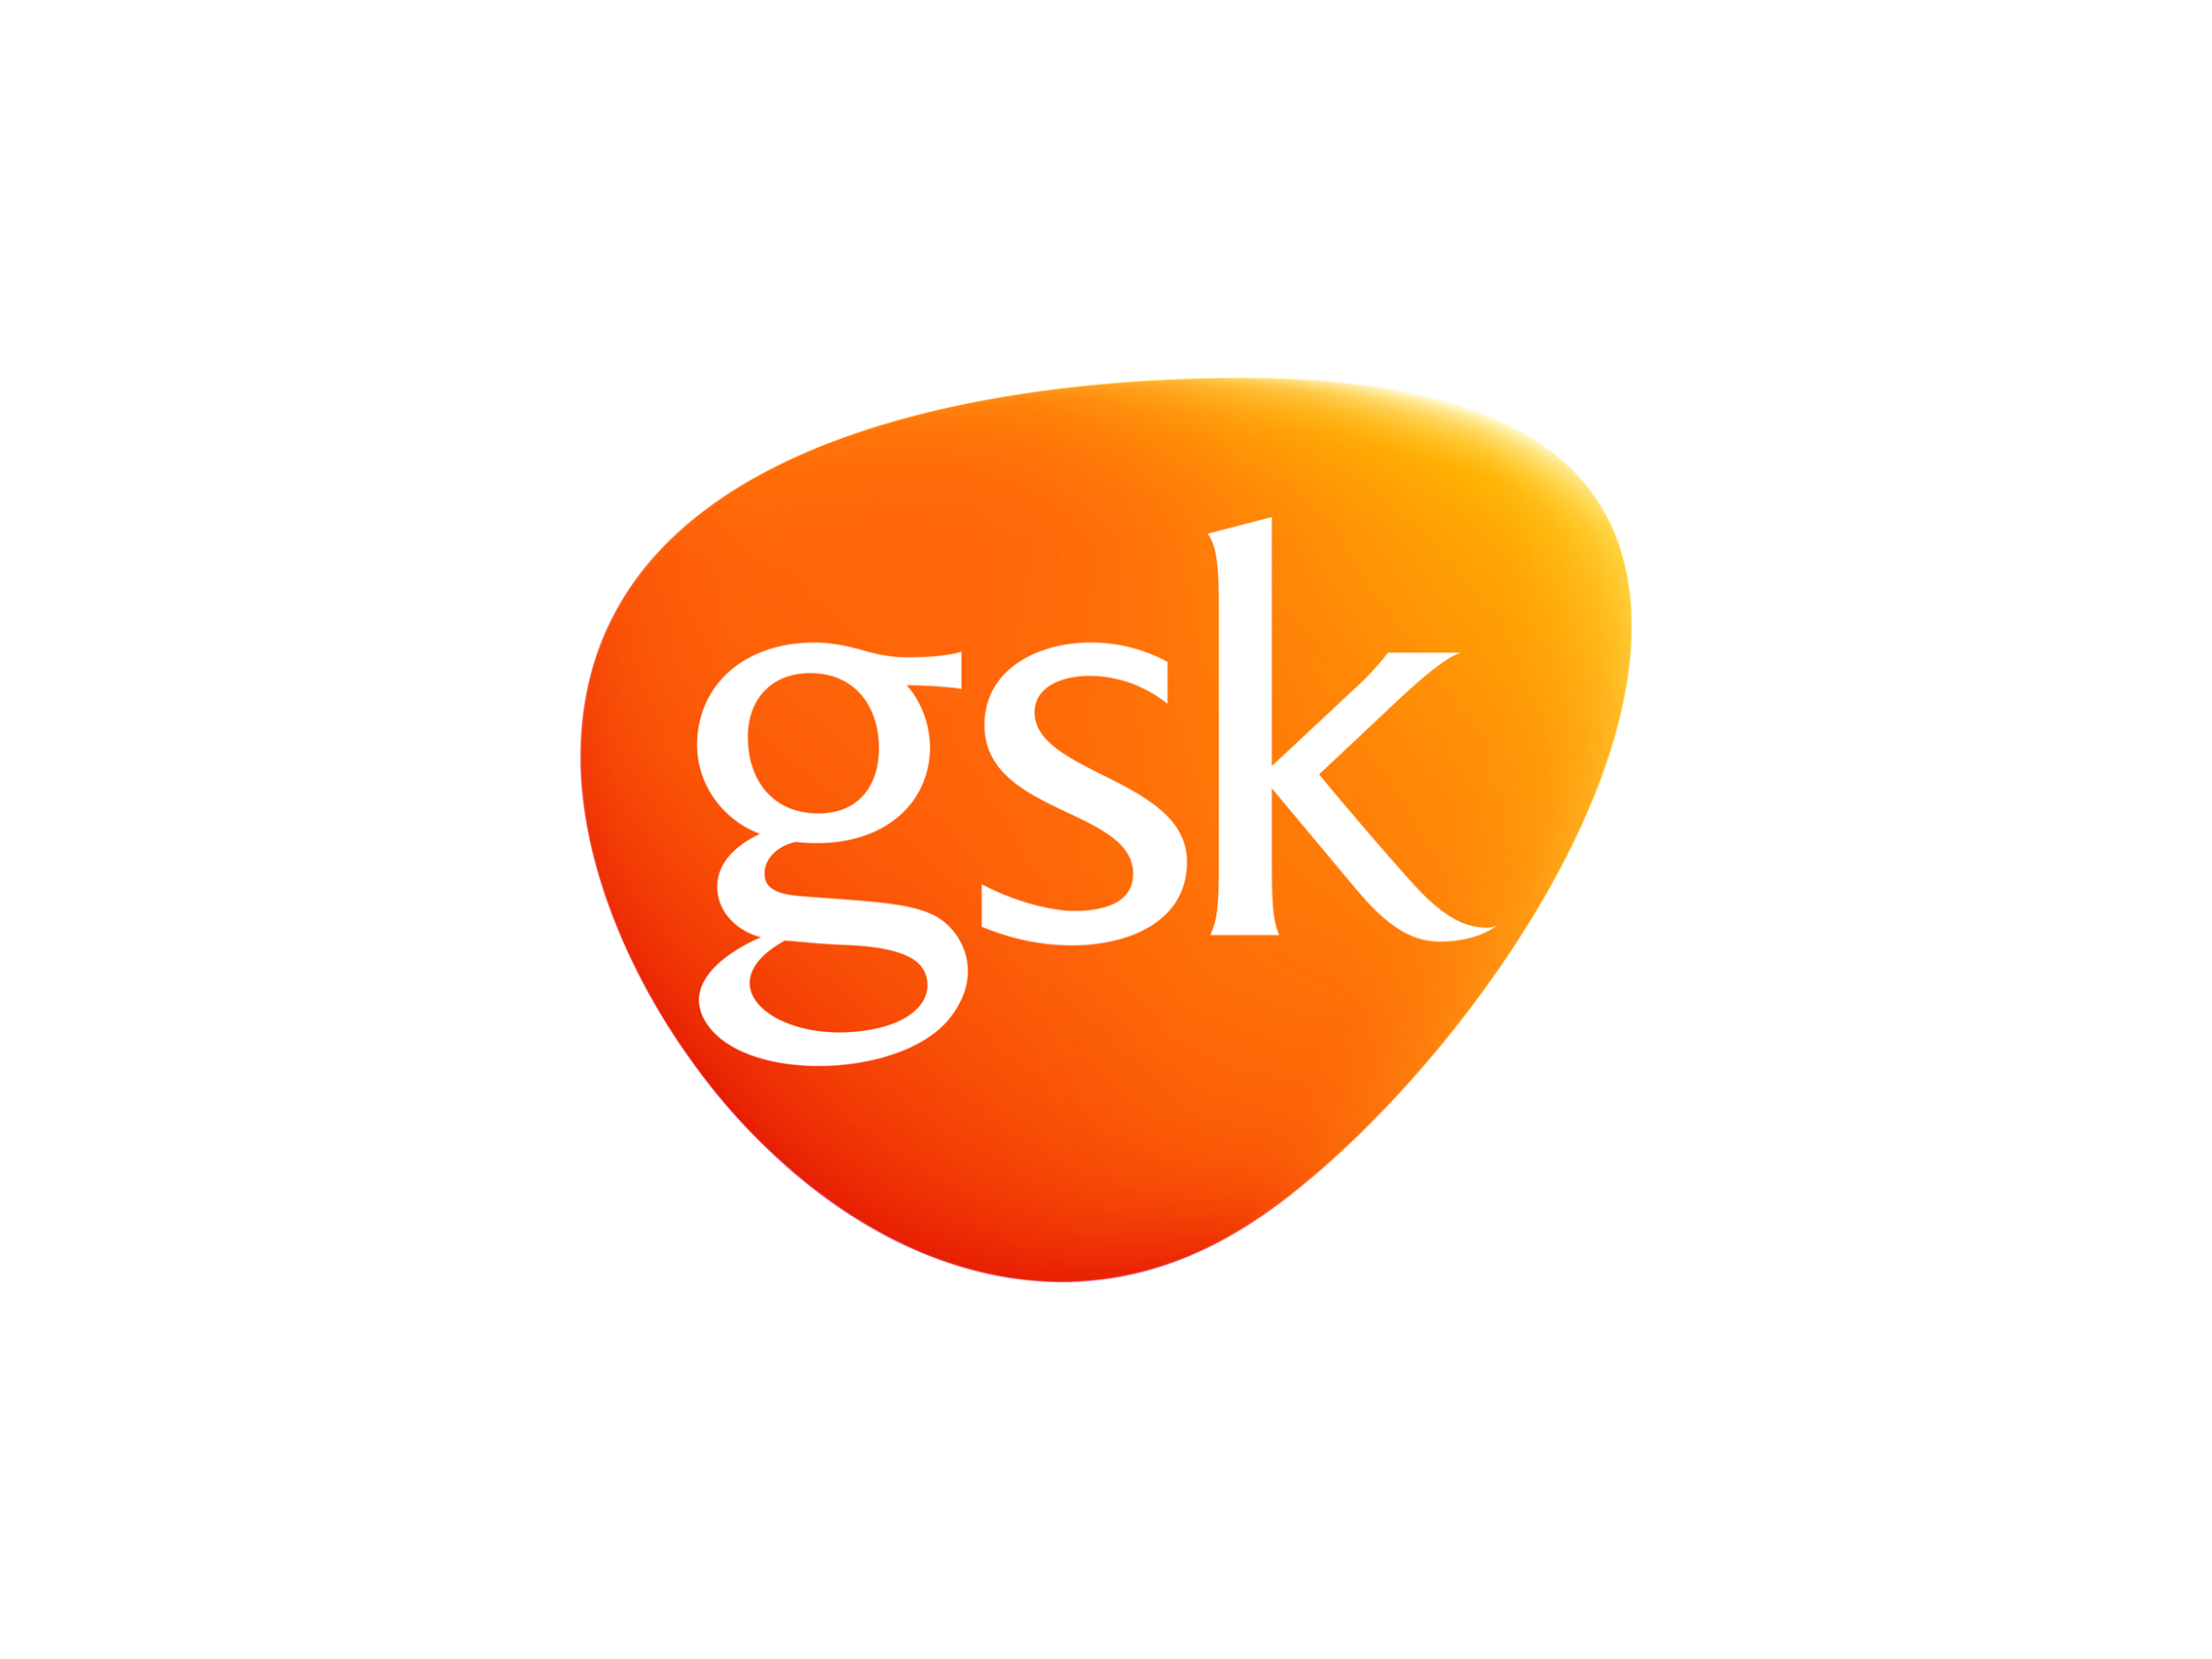 gsk-logo-2014